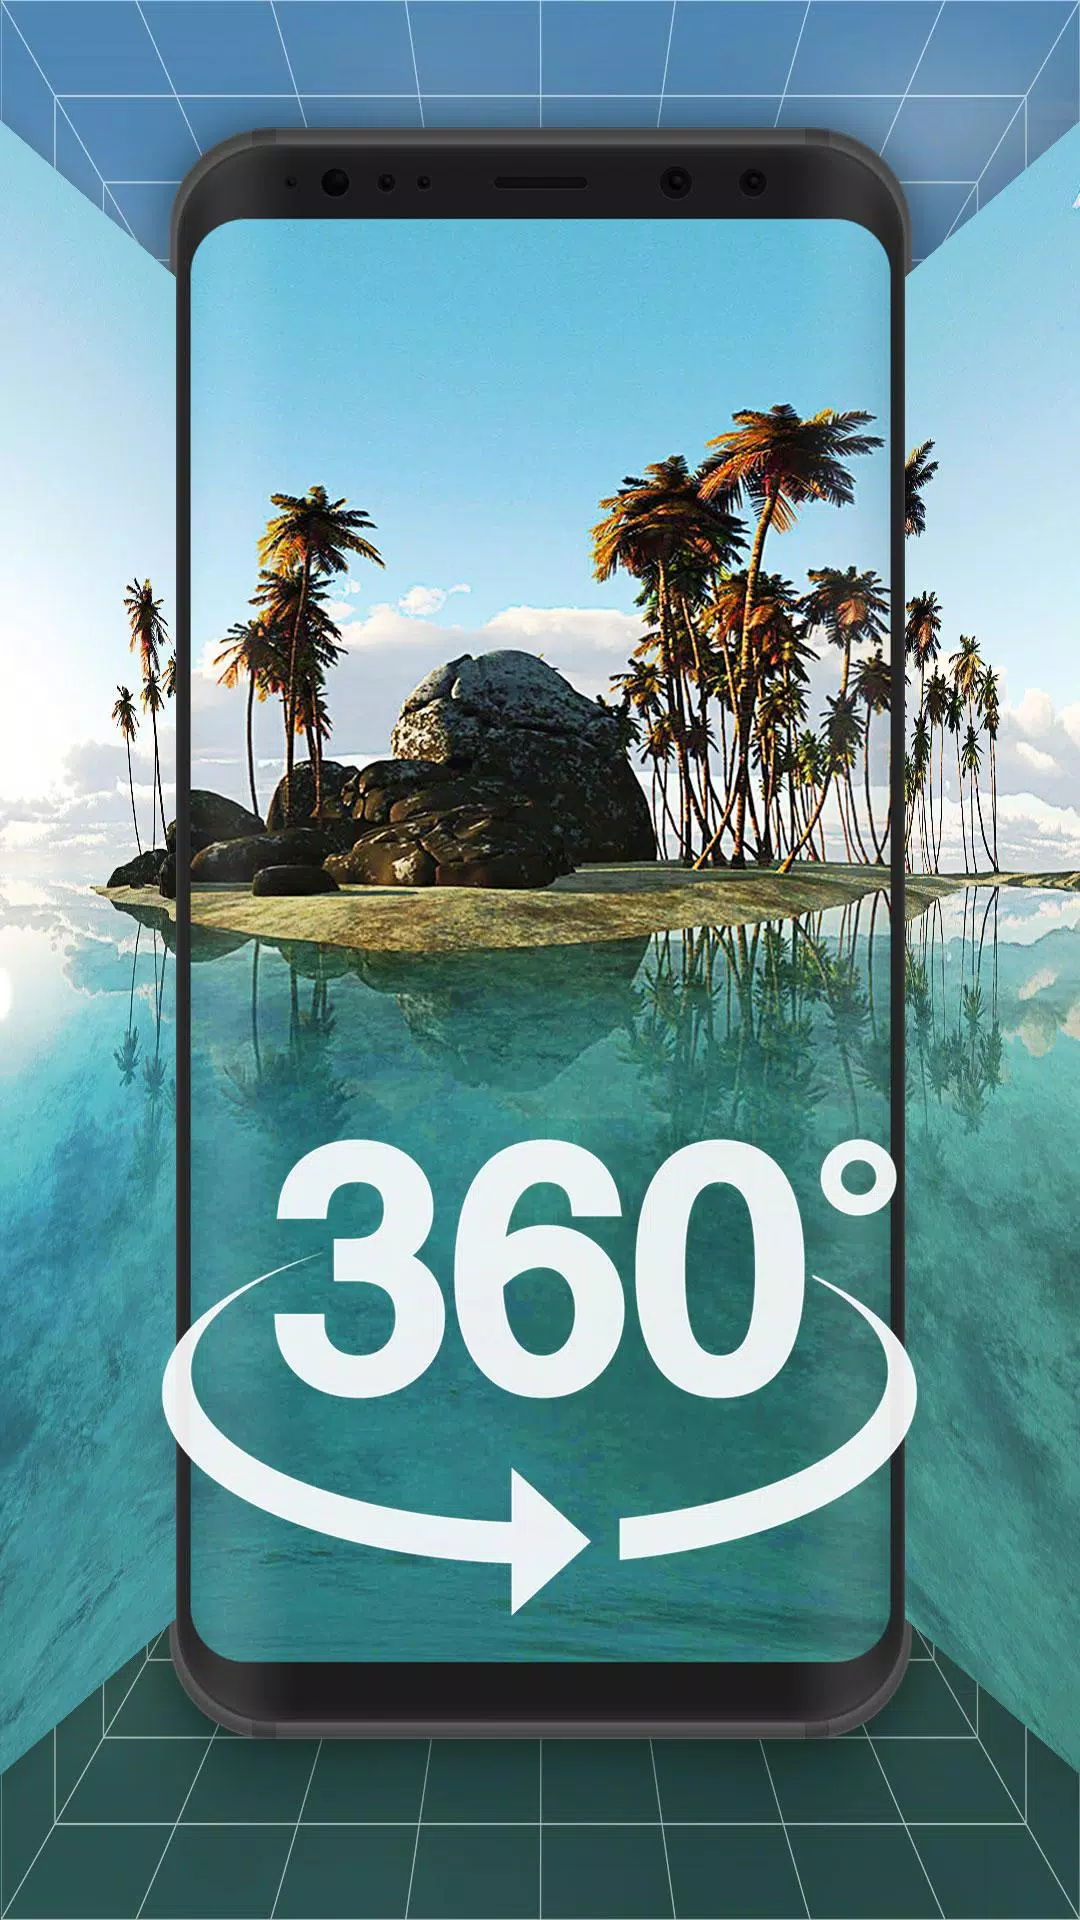 Descarga de APK de Live Wallpaper VR Style 360 Degree para Android